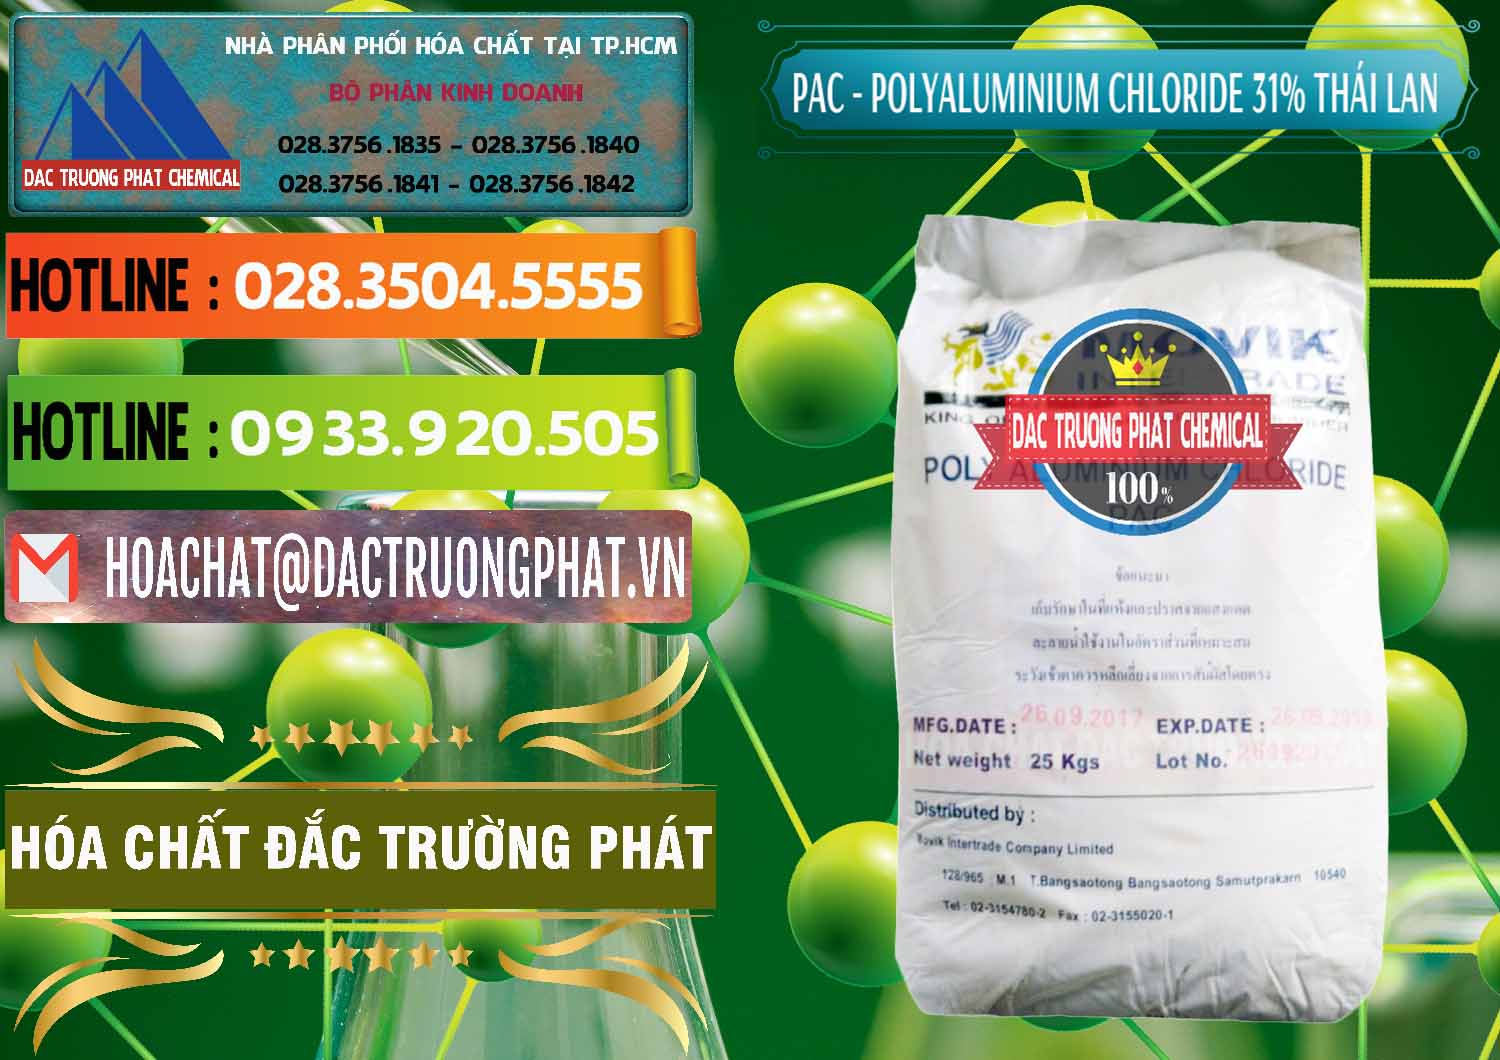 Cty bán ( cung ứng ) PAC - Polyaluminium Chloride 31% Thái Lan Thailand - 0469 - Cty nhập khẩu và phân phối hóa chất tại TP.HCM - cungcaphoachat.com.vn